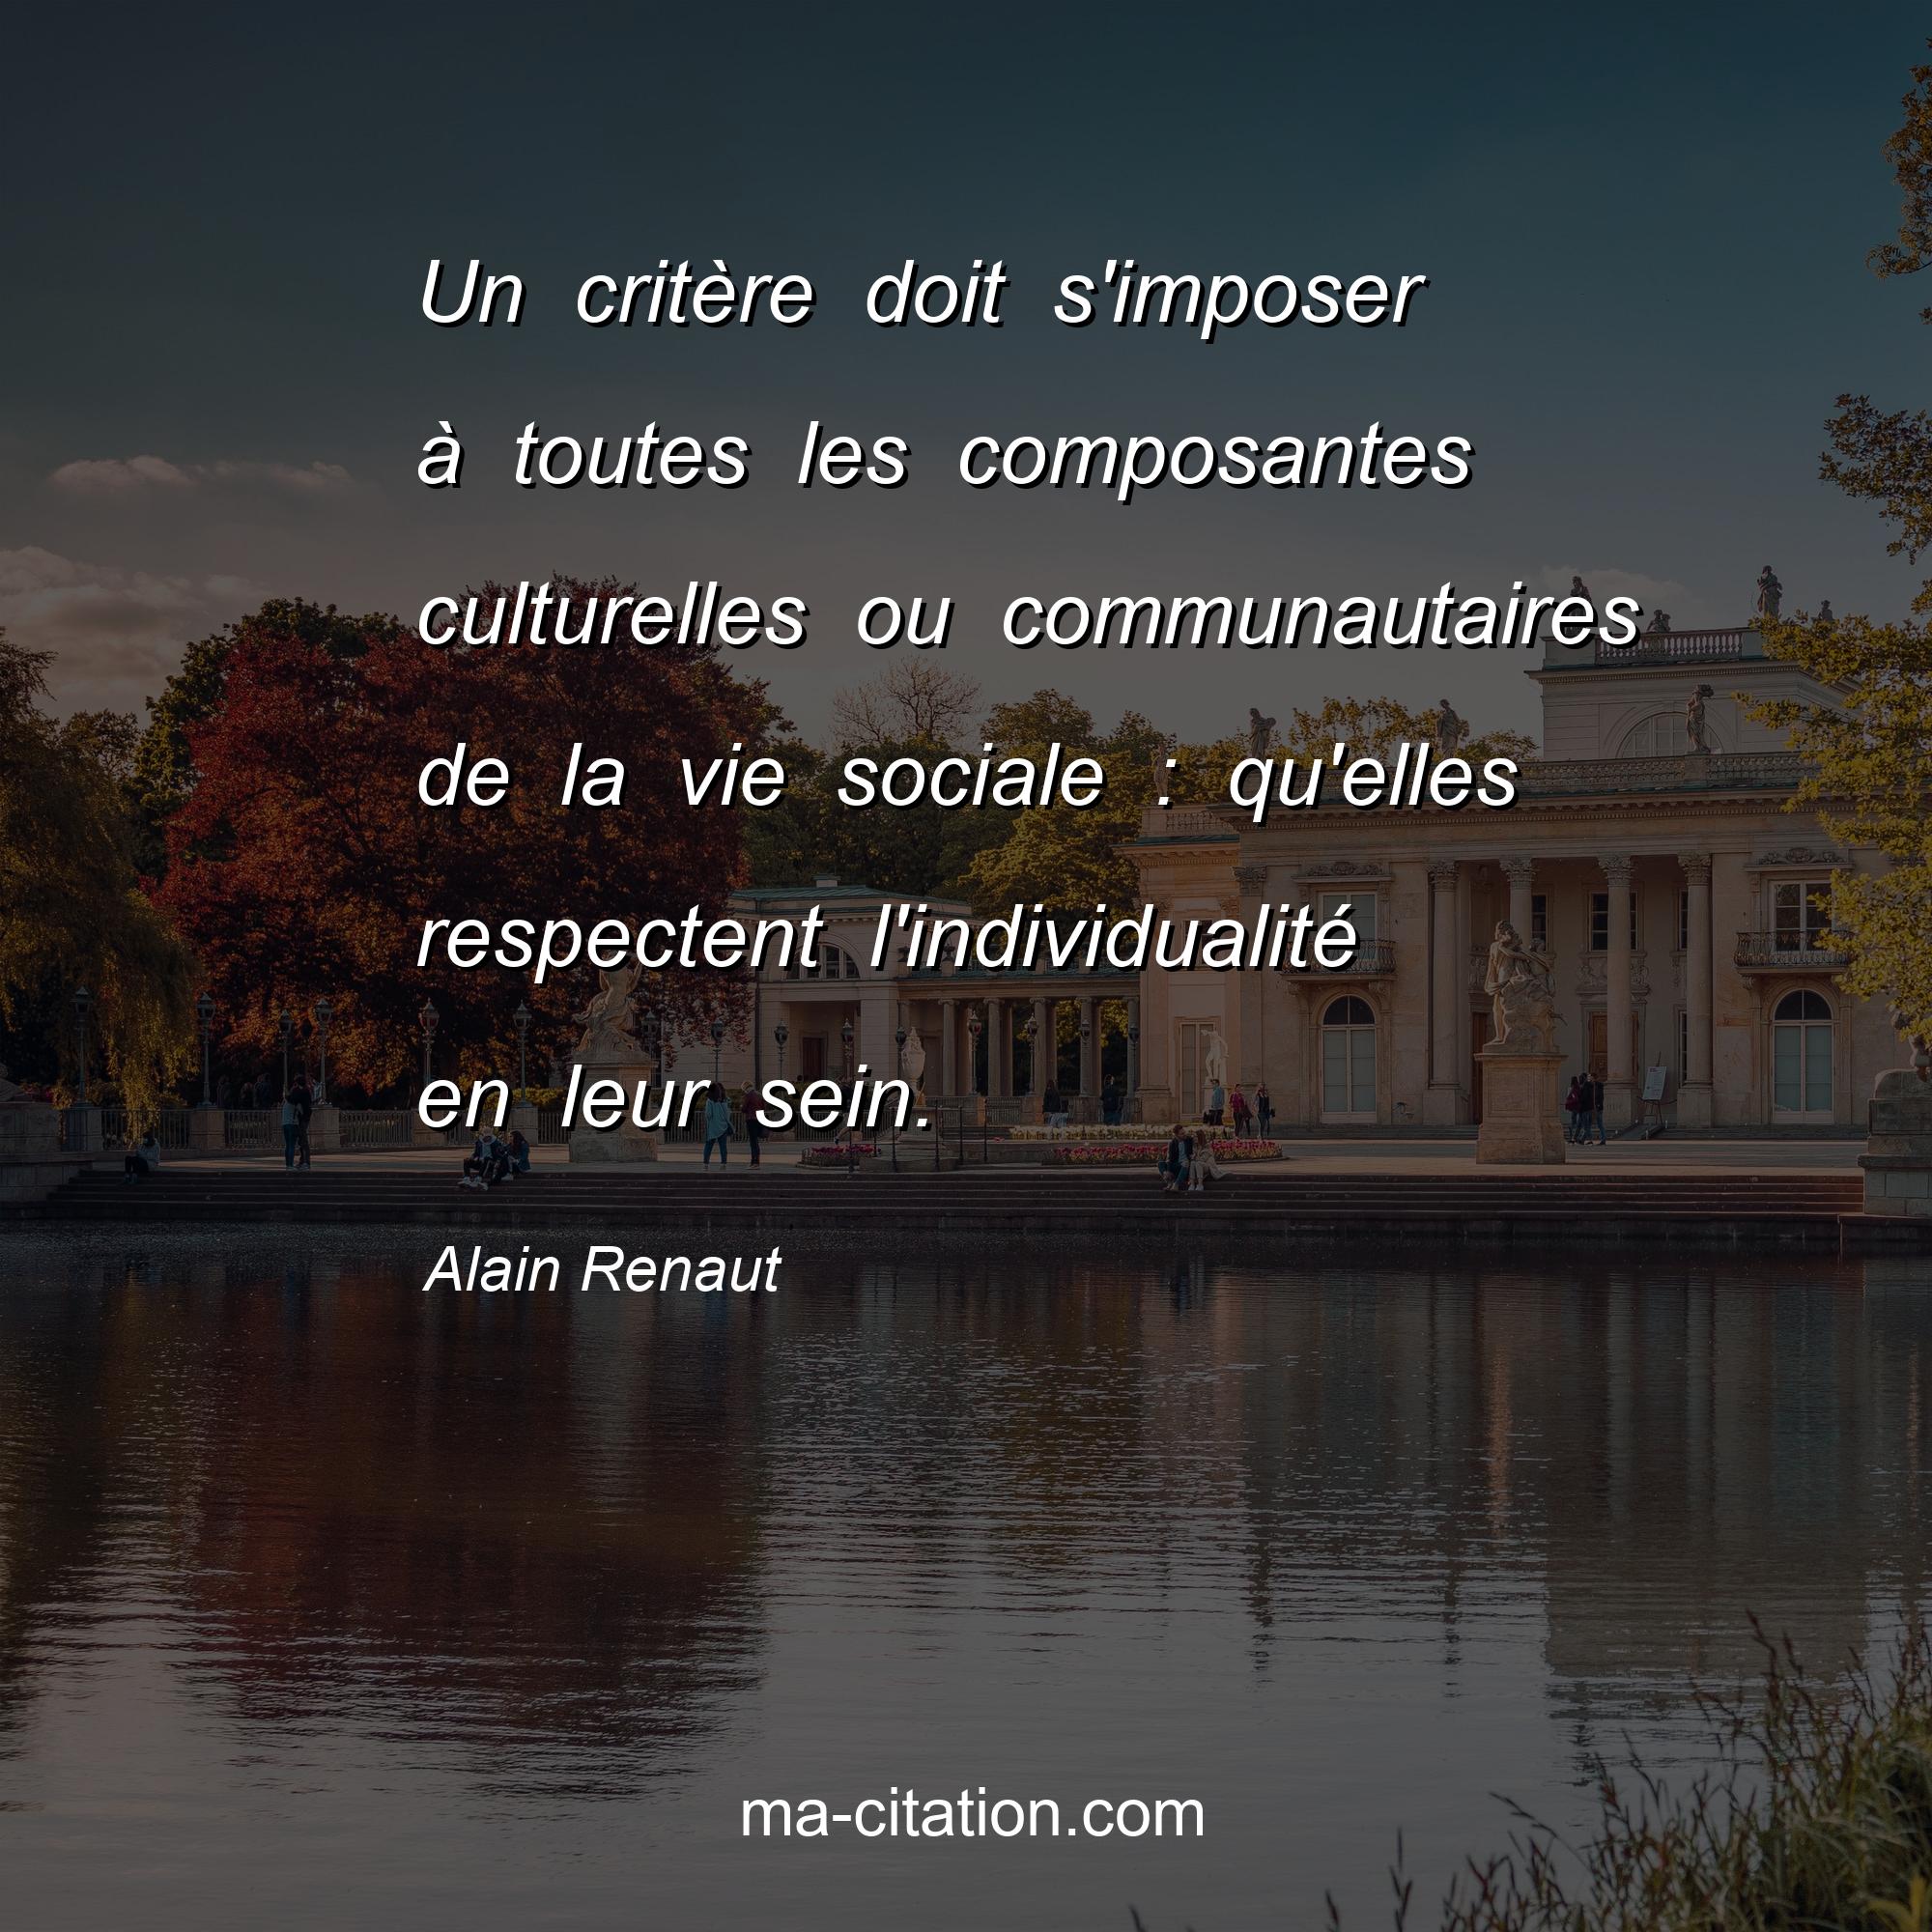 Alain Renaut : Un critère doit s'imposer à toutes les composantes culturelles ou communautaires de la vie sociale : qu'elles respectent l'individualité en leur sein.